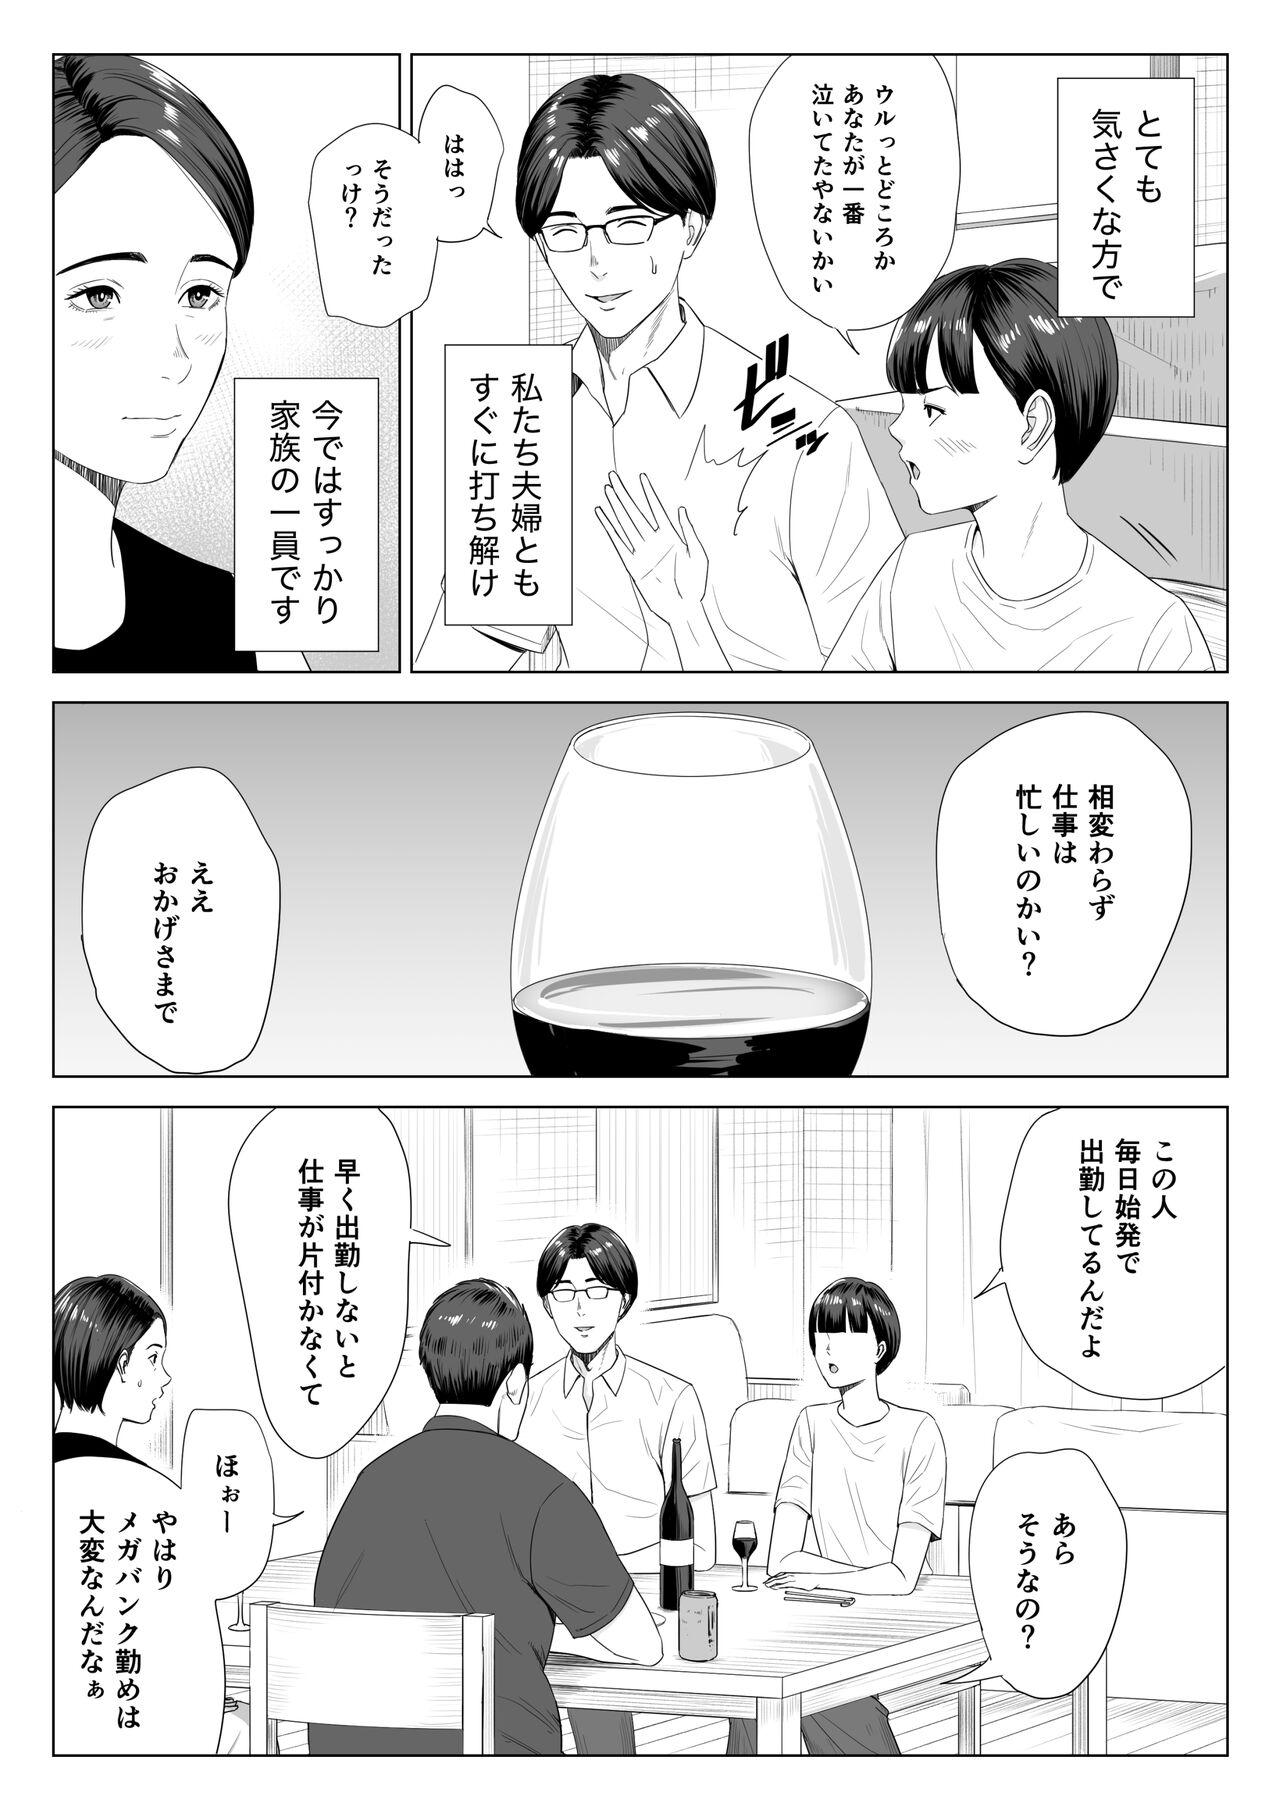 Friend Gibo no tsukaeru karada. - Original Fitness - Page 4